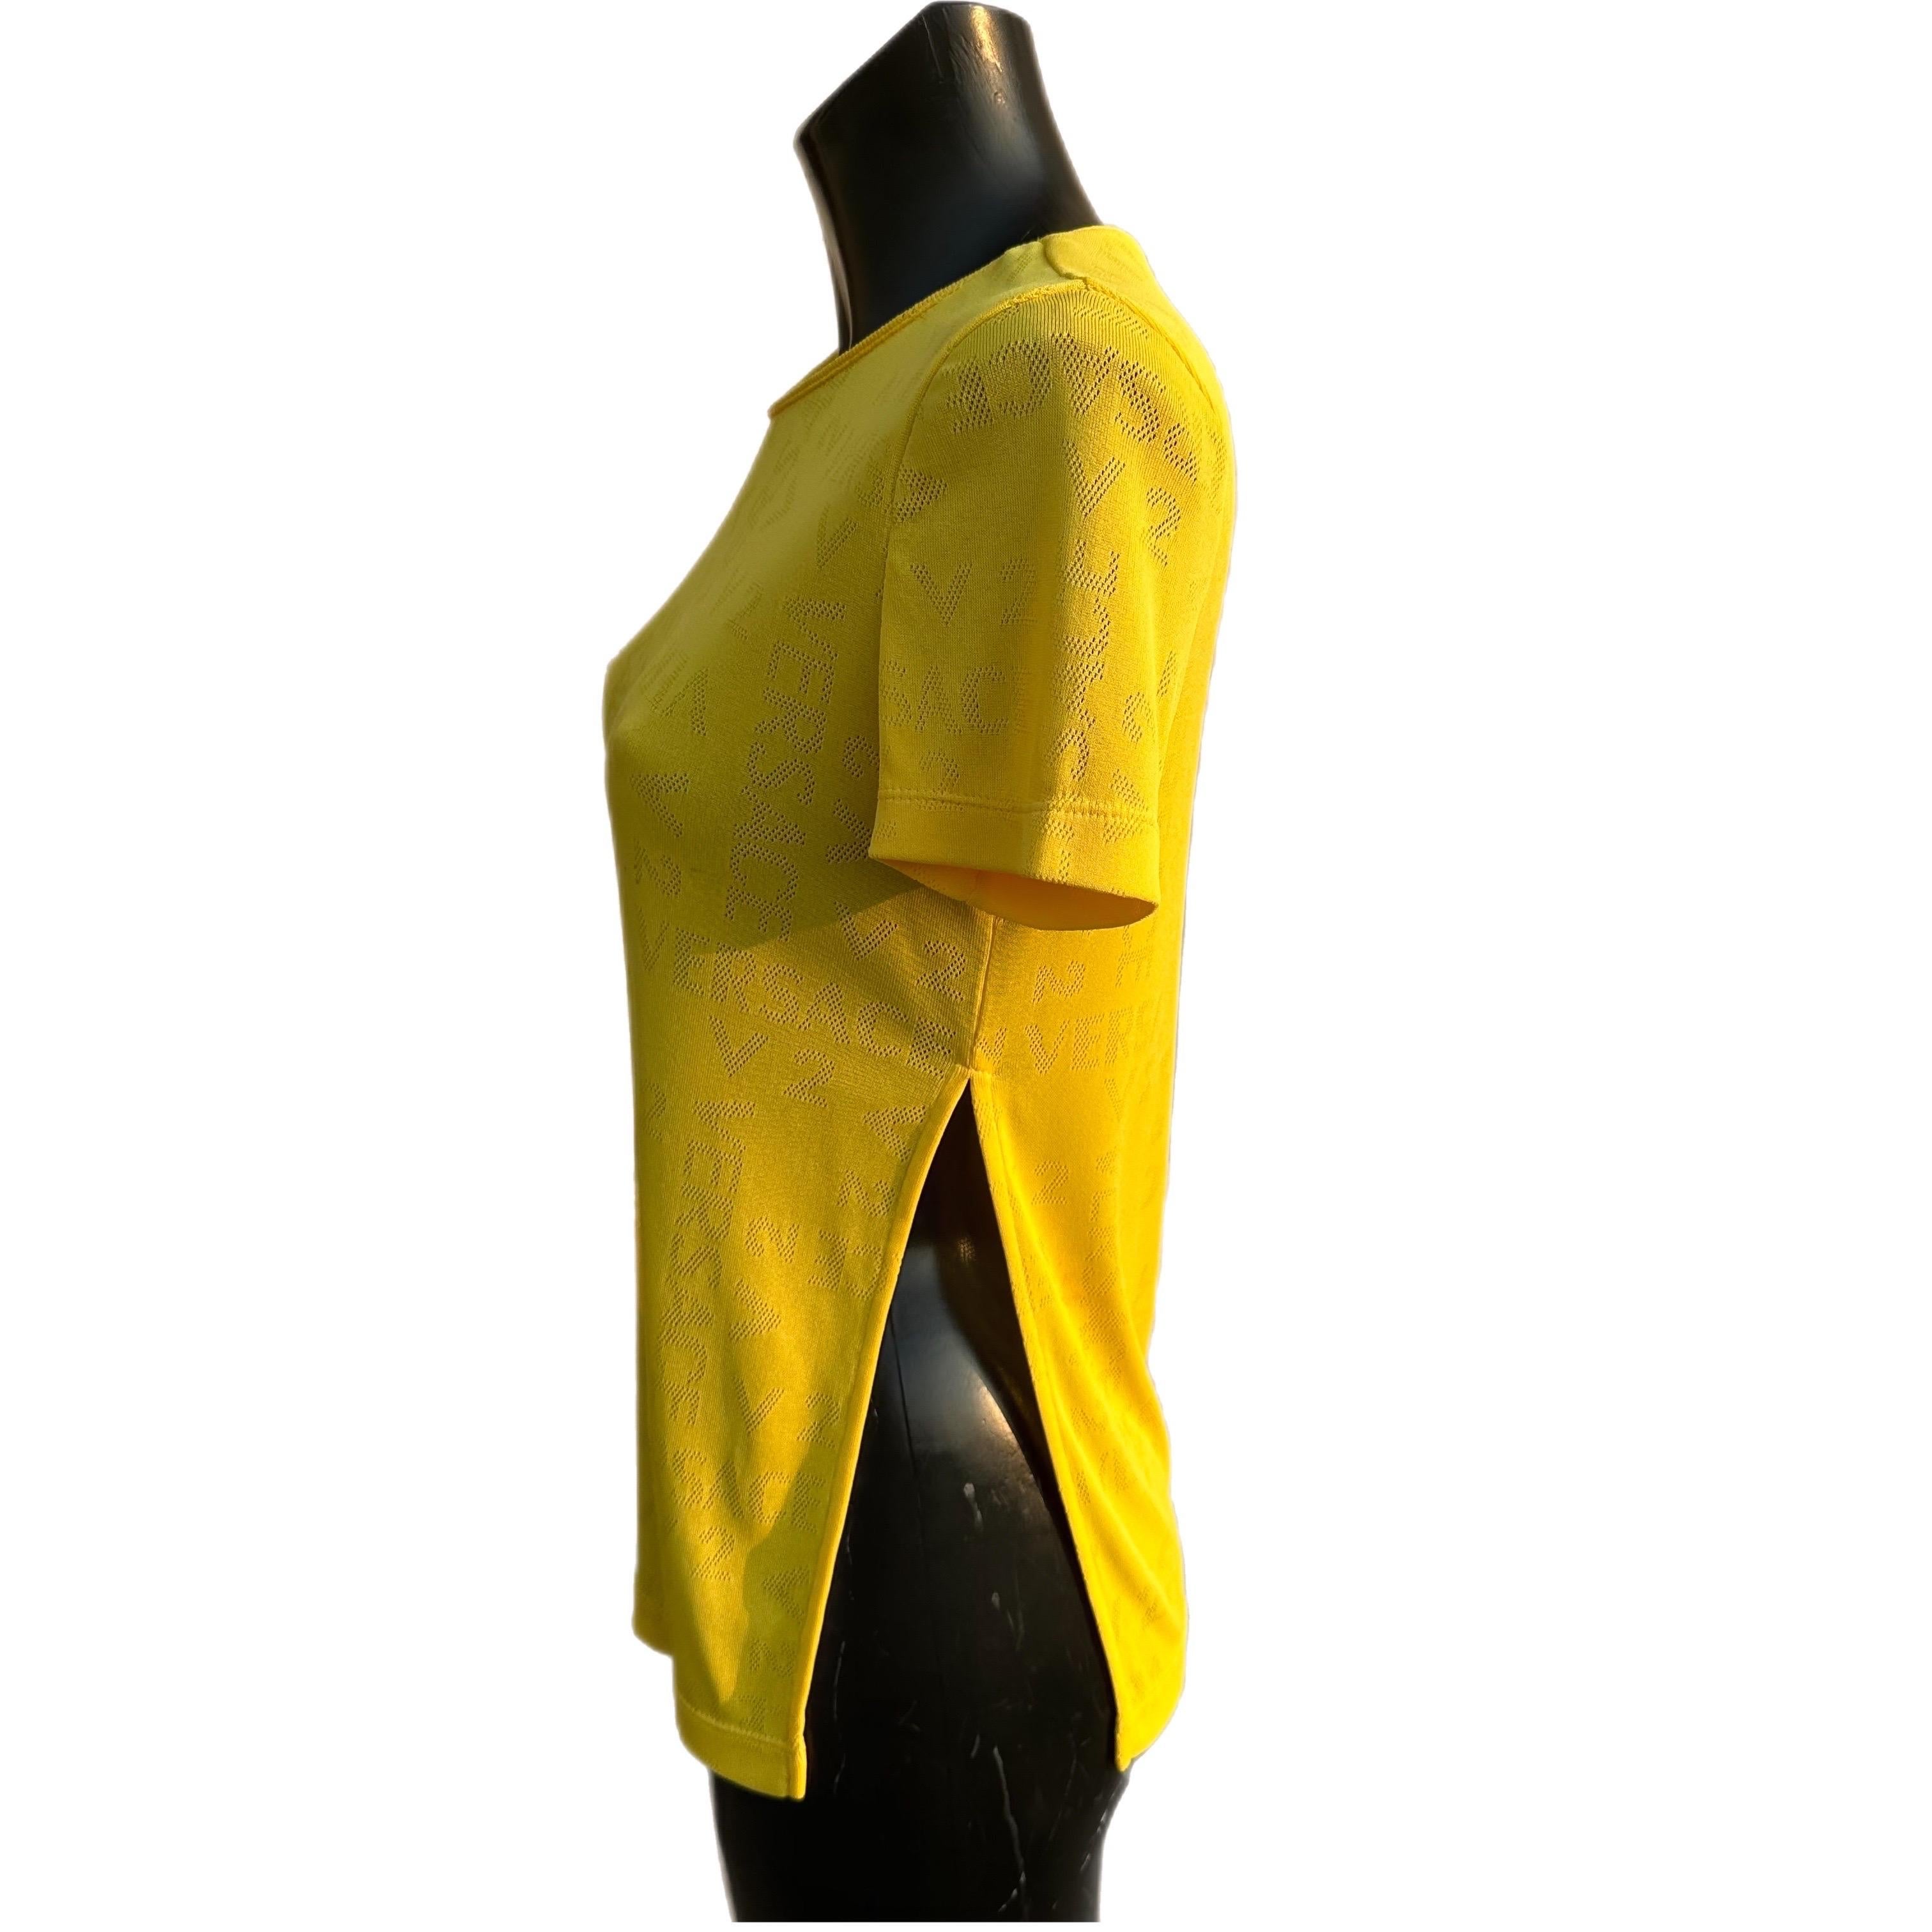 t-shirt monogram Versace con spacco laterale
Color giallo
Taglia 42 composizione triacetato e poliammide
Misure:
Spalle 42cm
Manica 18cm
Petto 46cm
Lunghezza 63cm